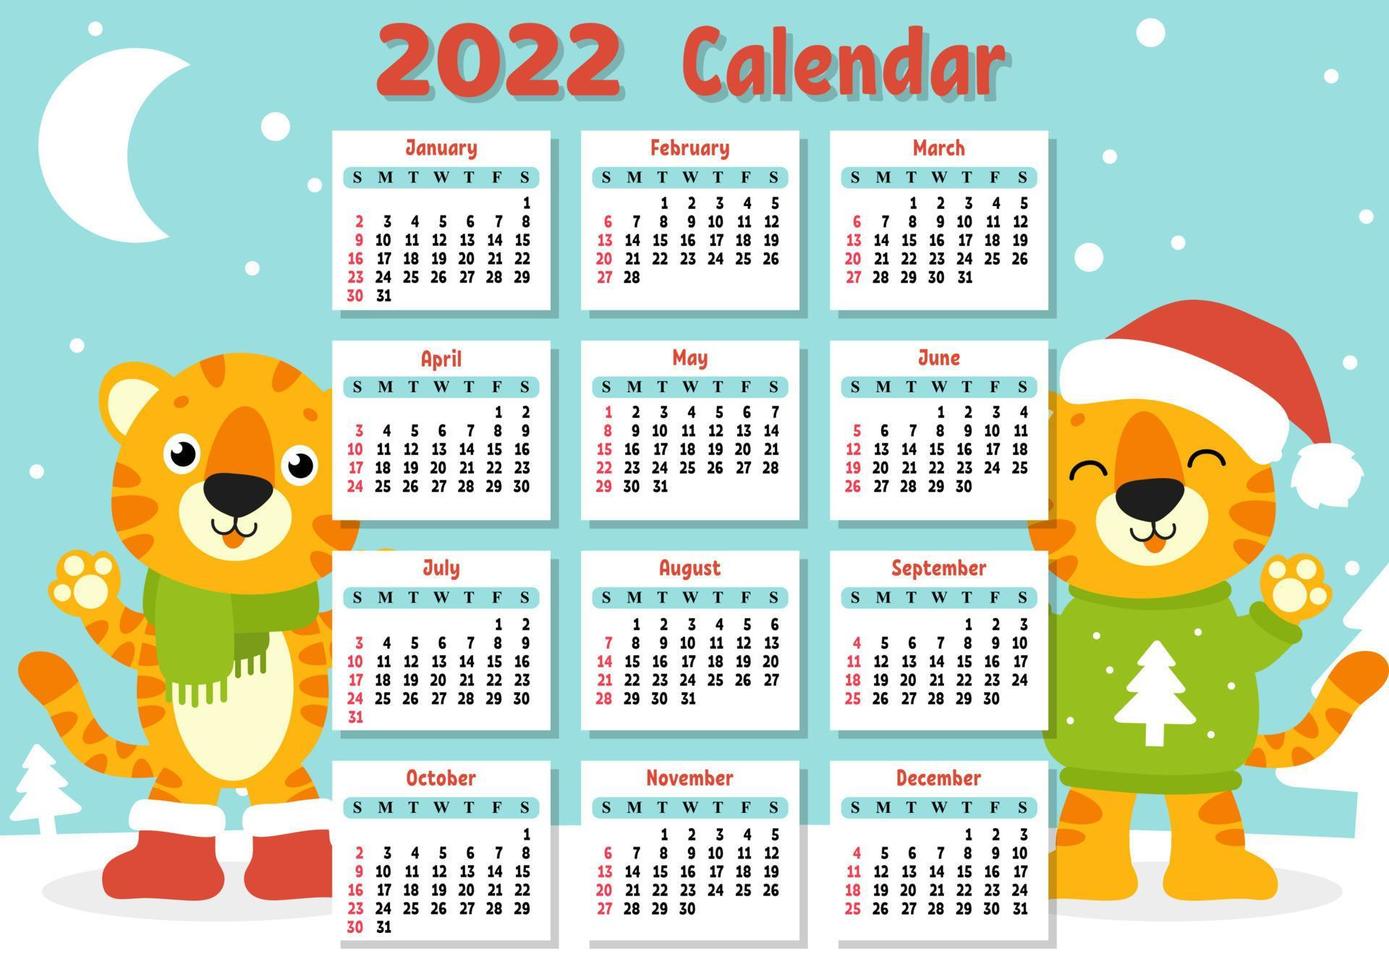 kalender voor 2022 met een schattig tijgersymbool van het nieuwe jaar. leuk en helder ontwerp. geïsoleerde kleur vectorillustratie. cartoon-stijl. vector